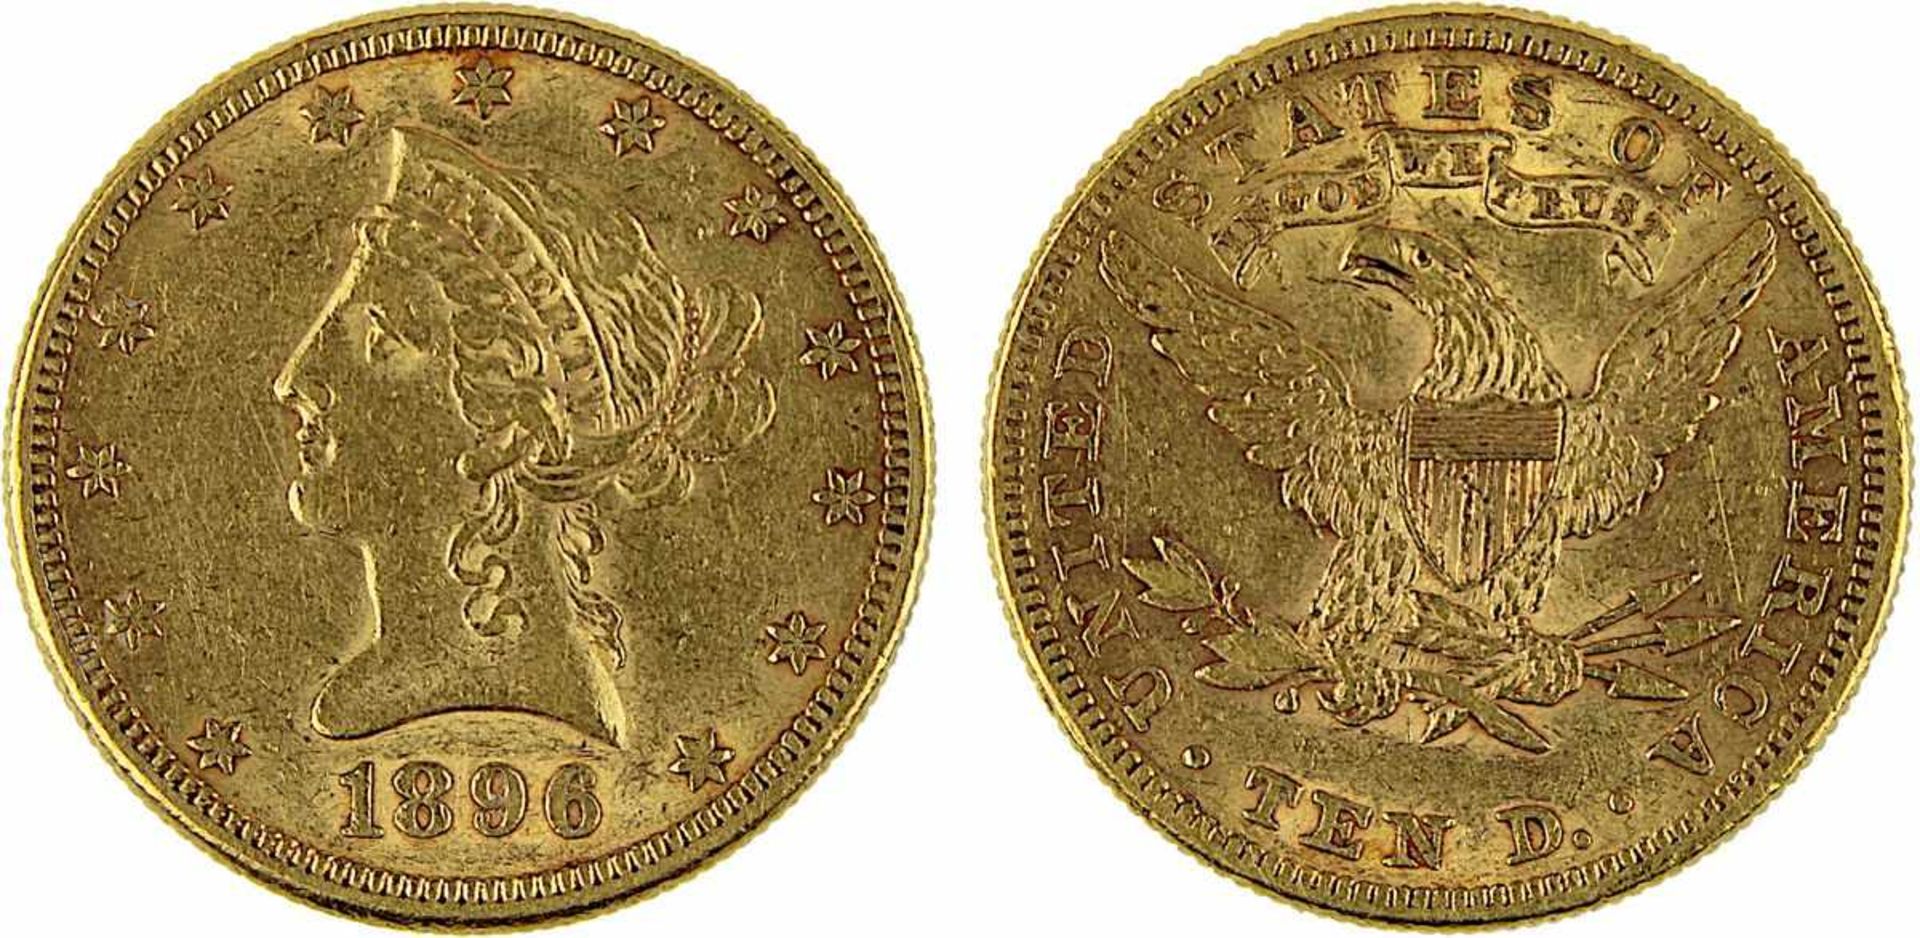 Goldmünze zu 10 Dollar, USA 1896, 900er Gold, 16,7 g, Coroned Head / Eagle, Erhaltung sehr schön -